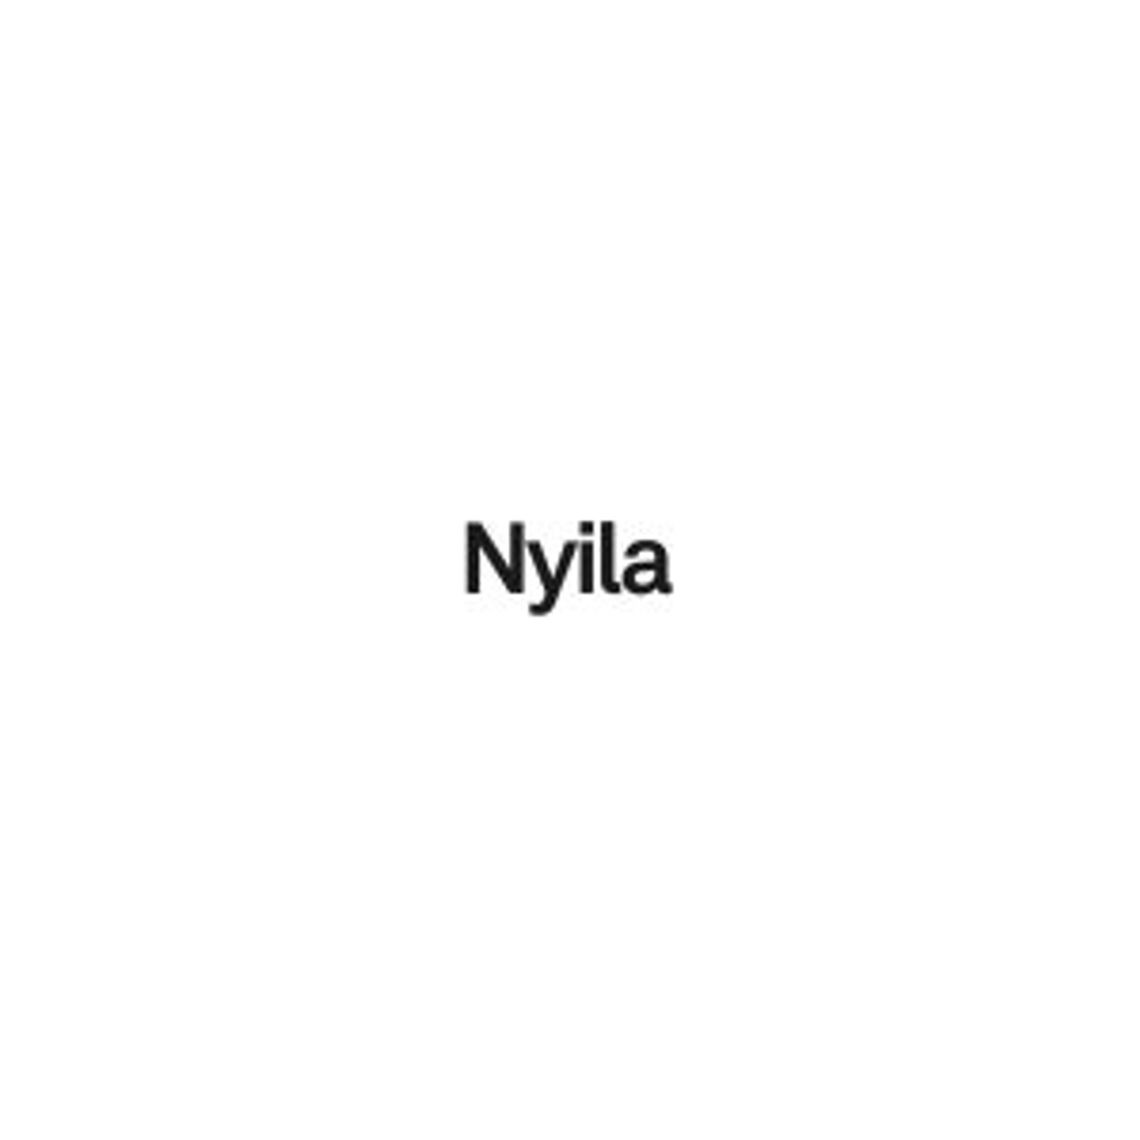 Montaż komponentów - Nyila